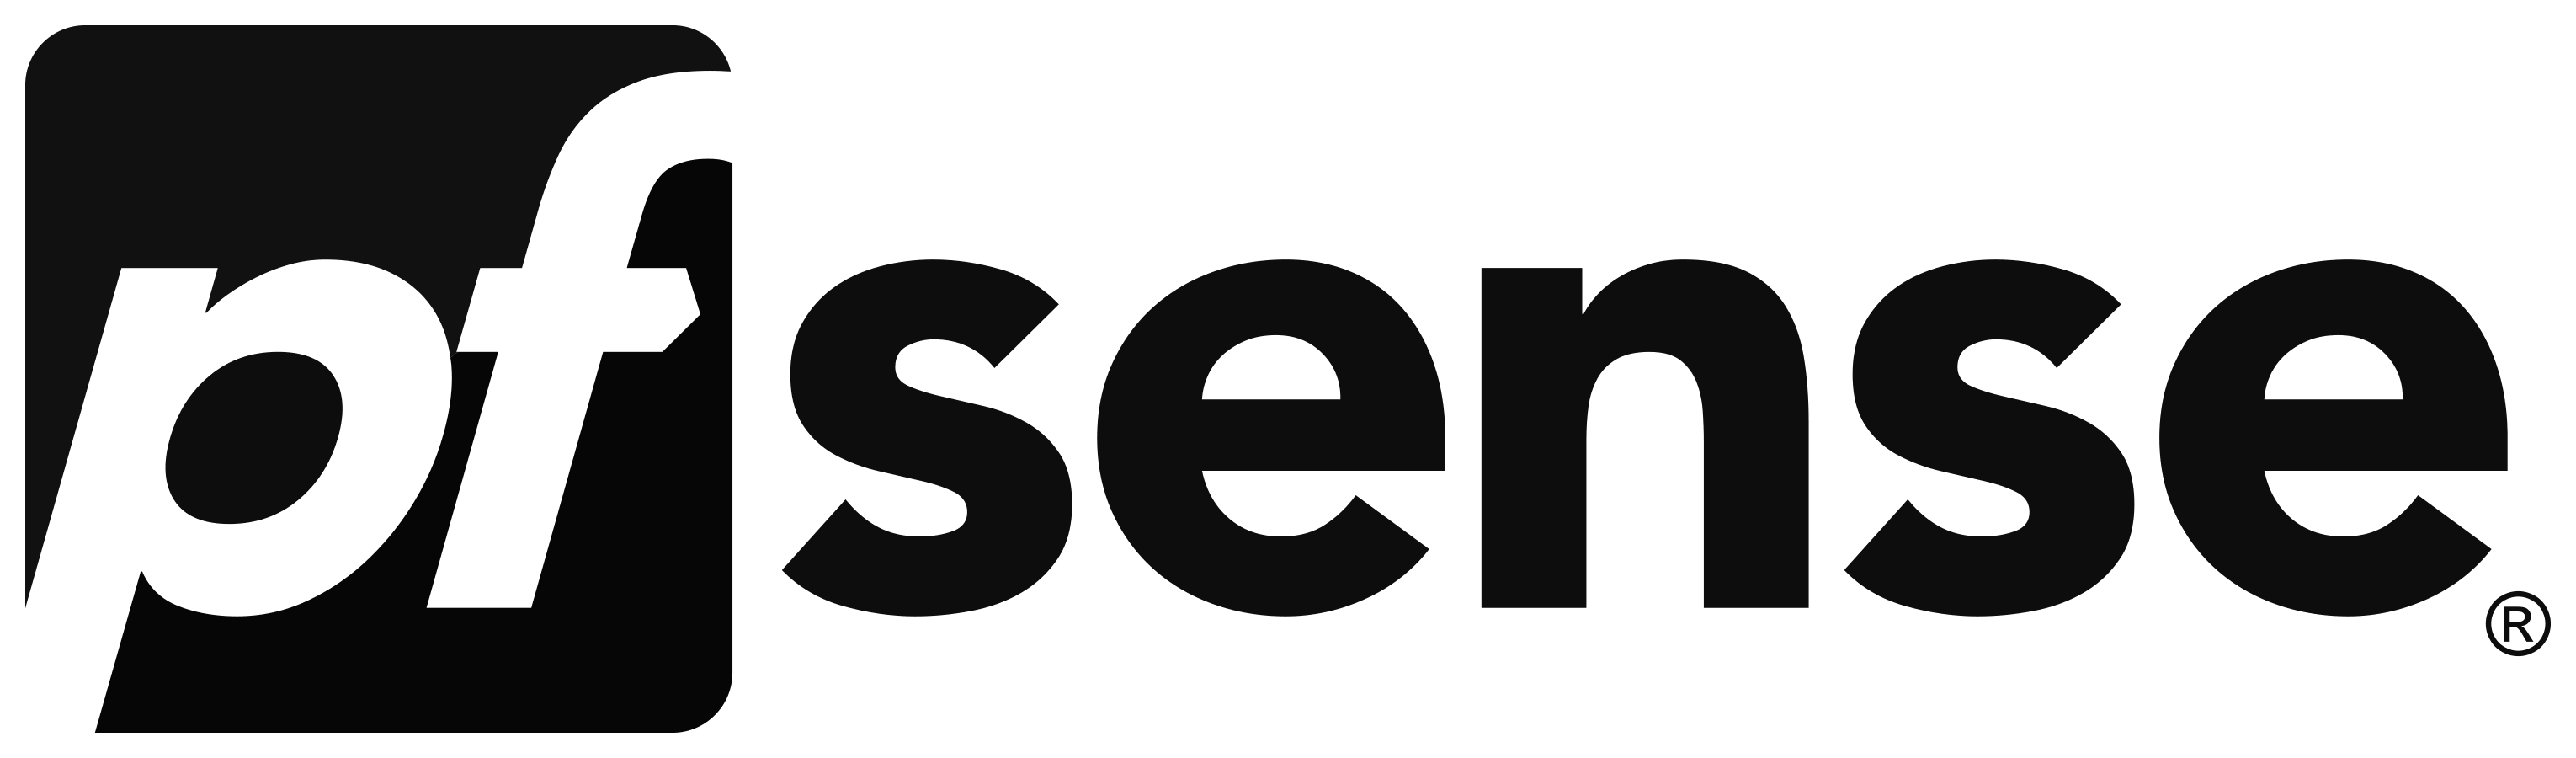 PfSense logo